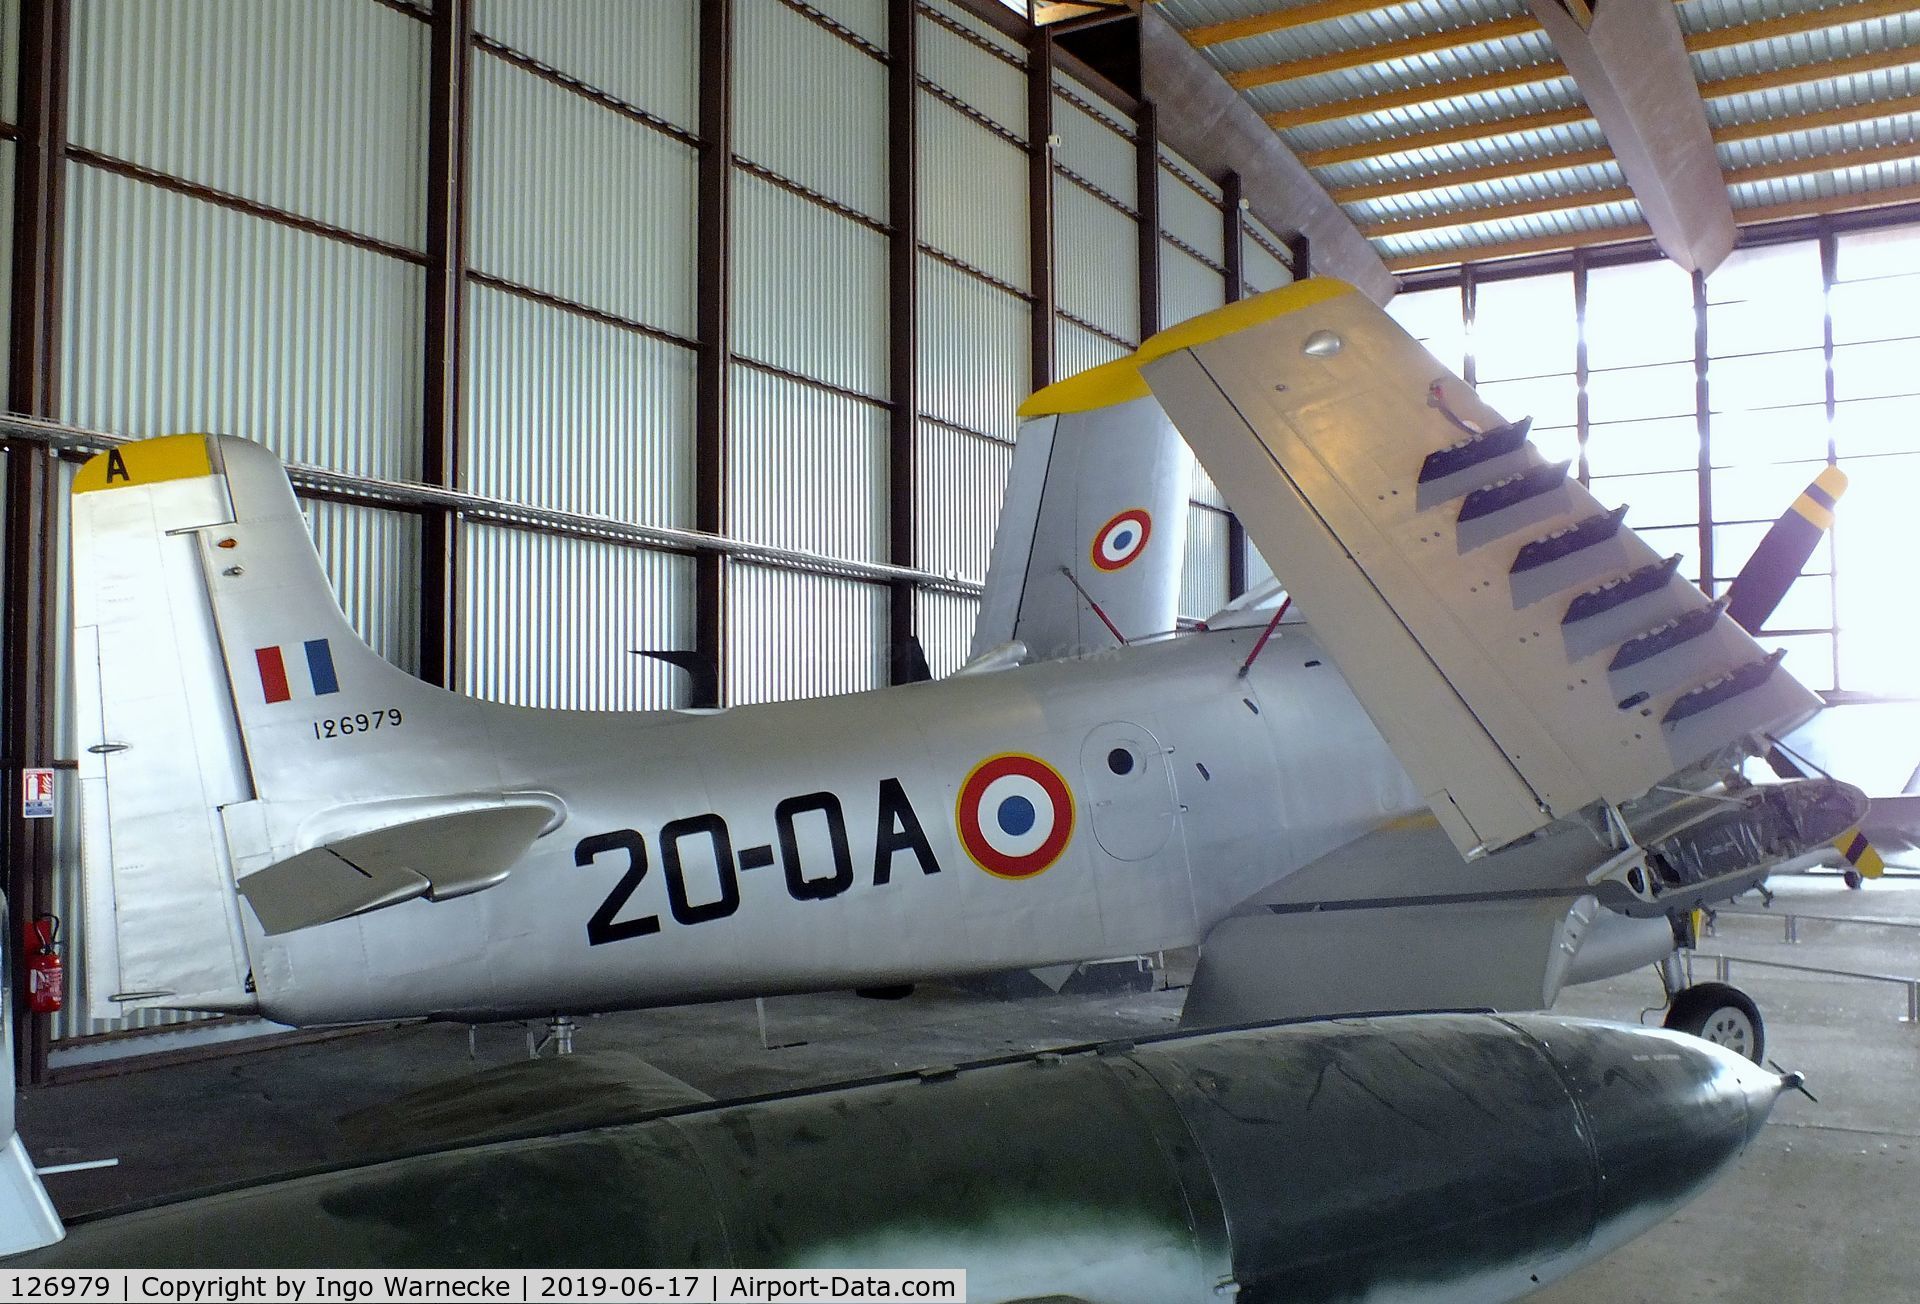 126979, Douglas AD-4N Skyraider C/N 7779, Douglas AD-4N (A-1D) Skyraider at the Musee de l'Air, Paris/Le Bourget